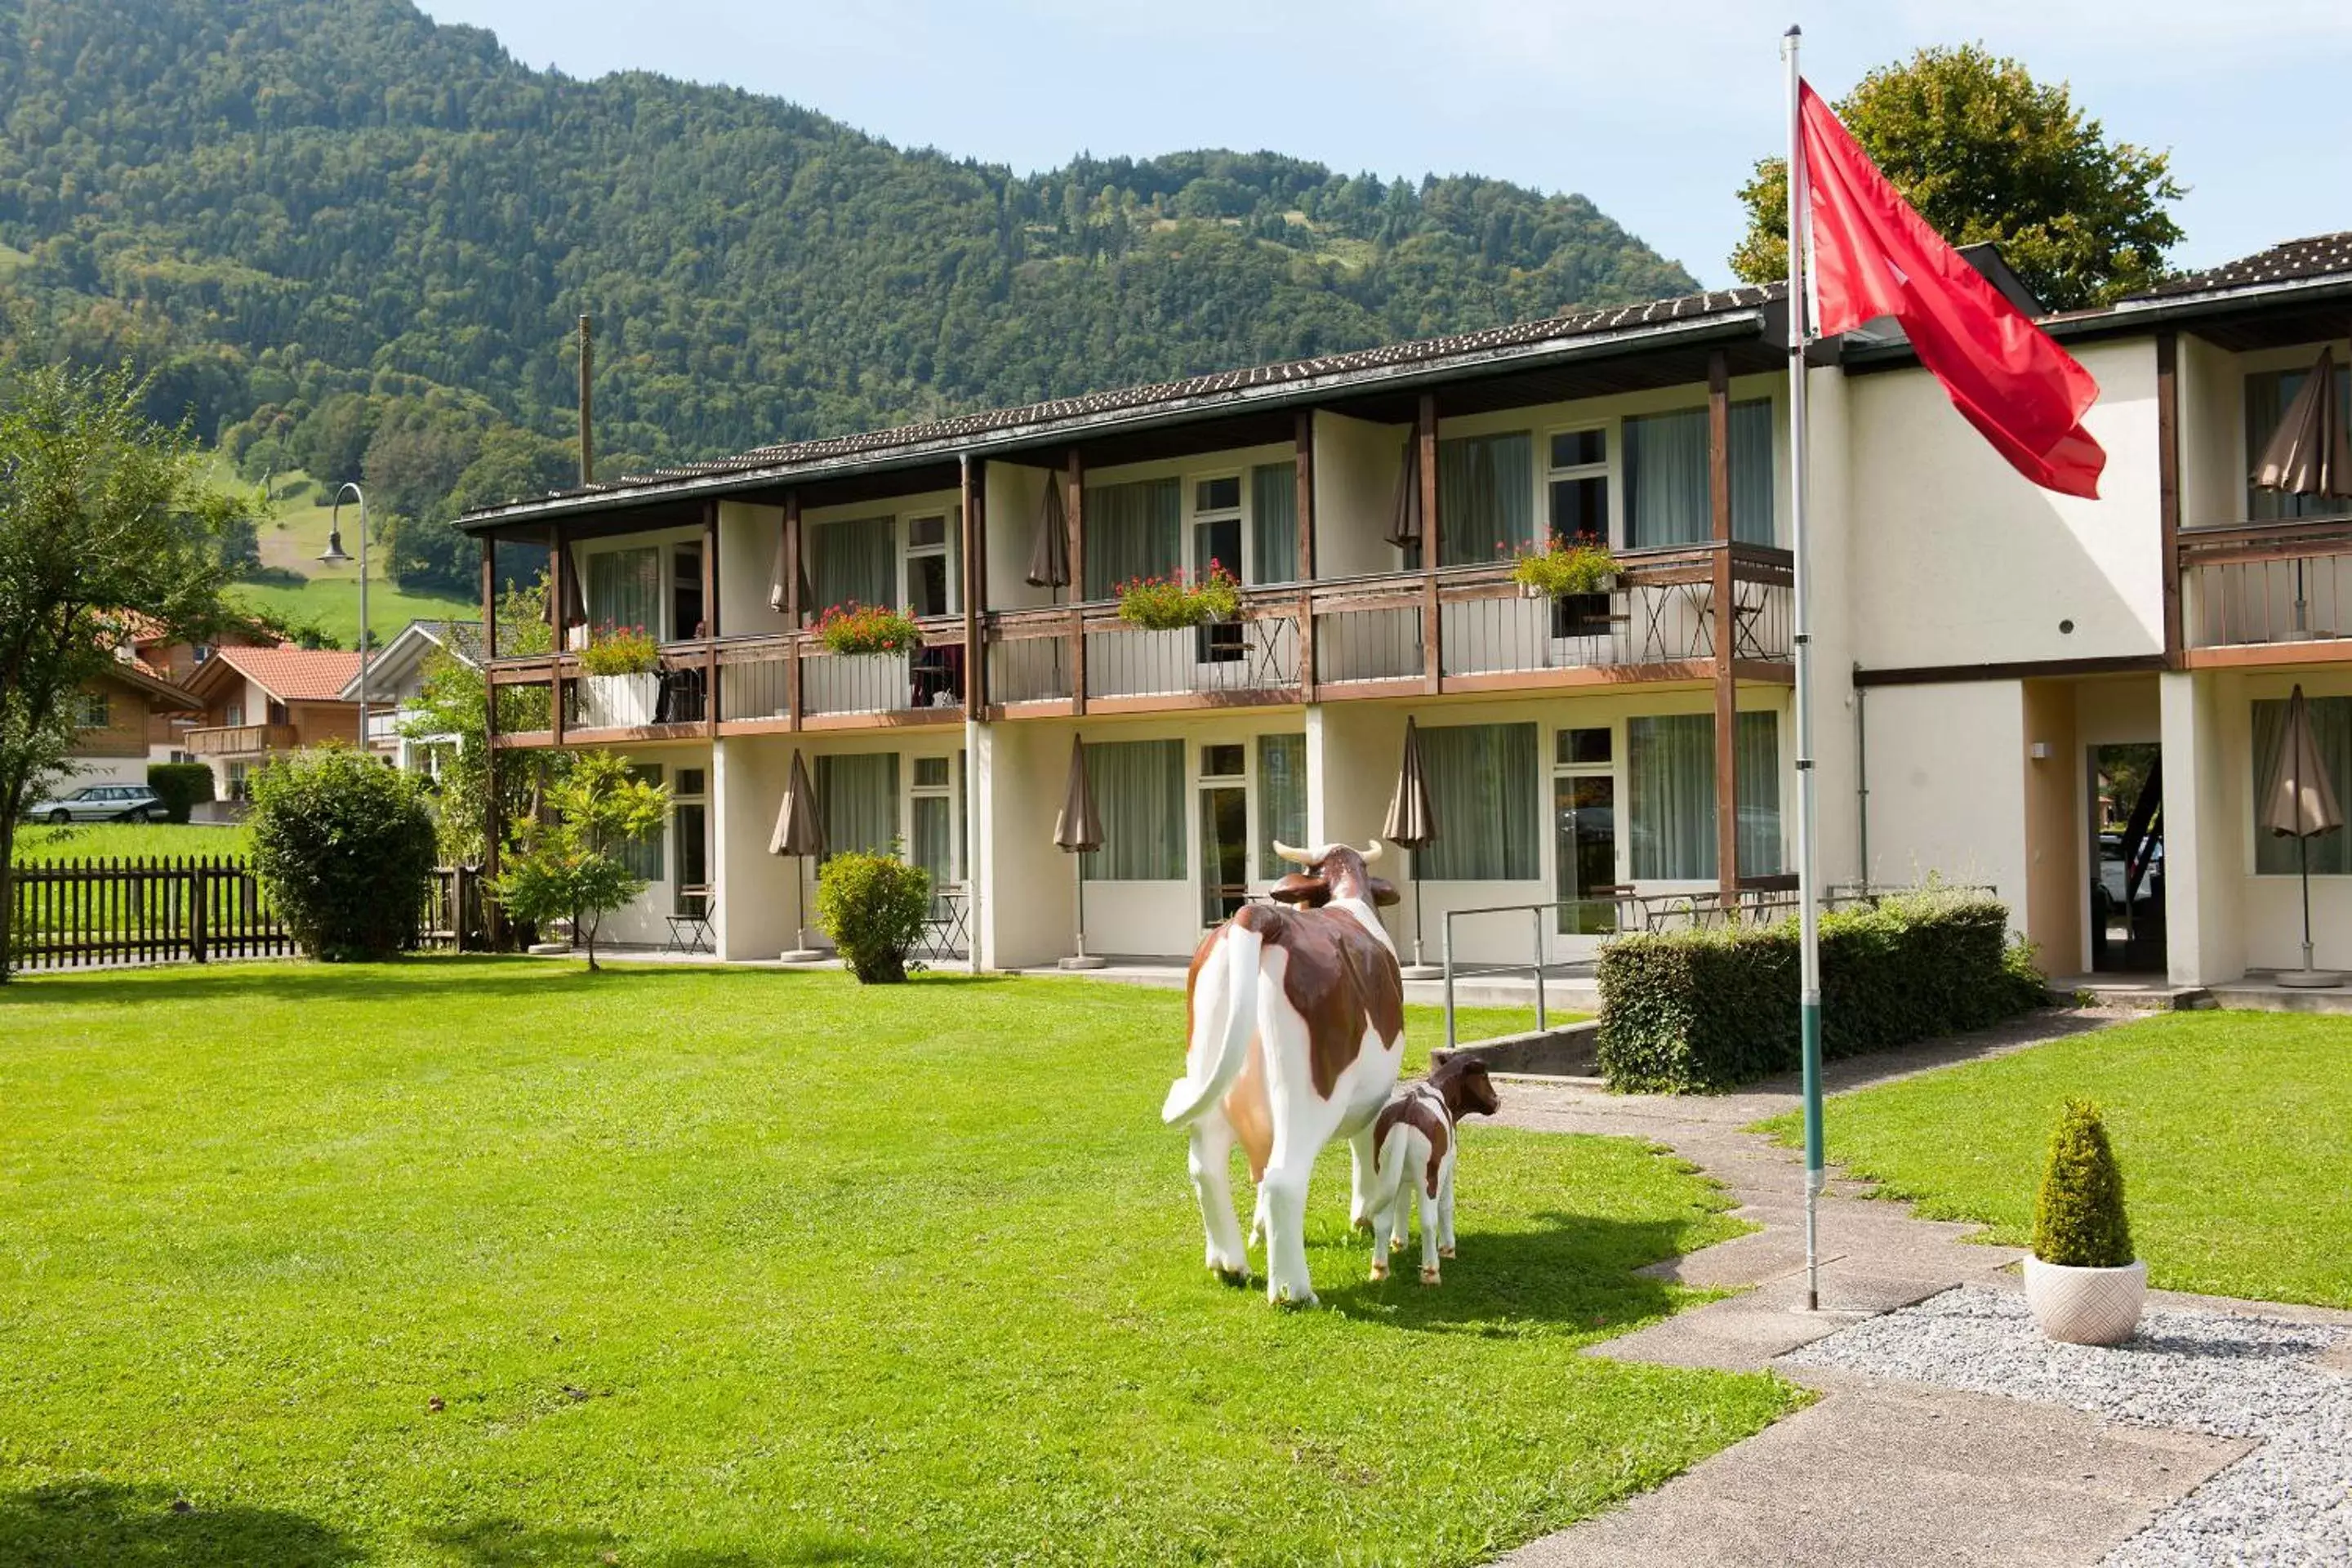 Property Building in Jungfrau Hotel Annex Alpine-Inn